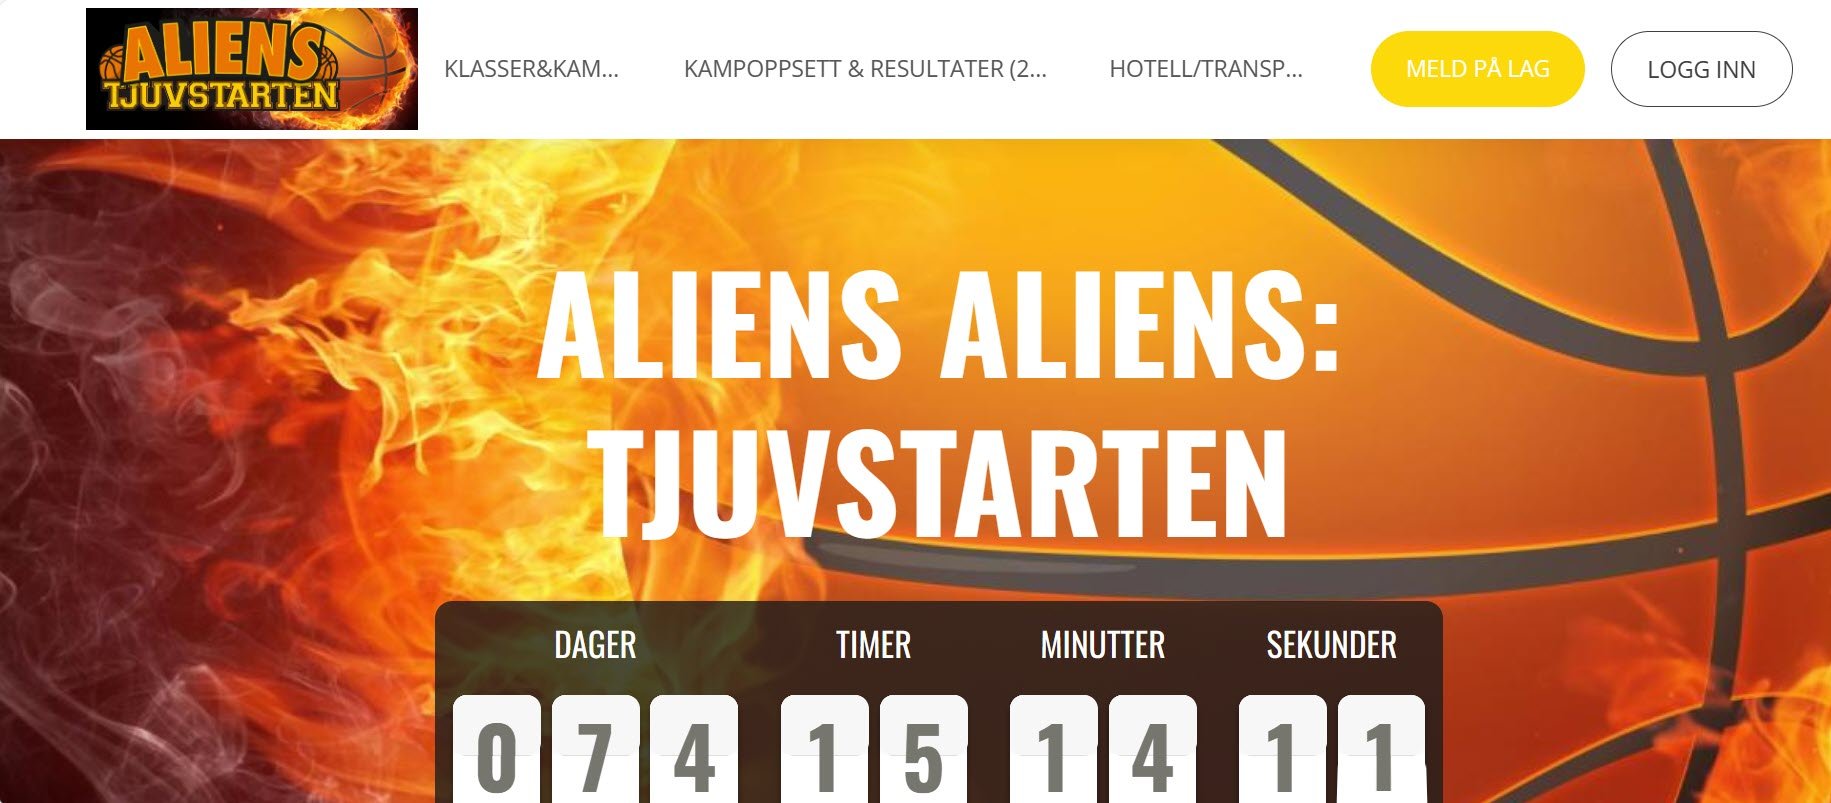 Asker Aliens inviterer til "Tjuvstarten" for 2012 lag!